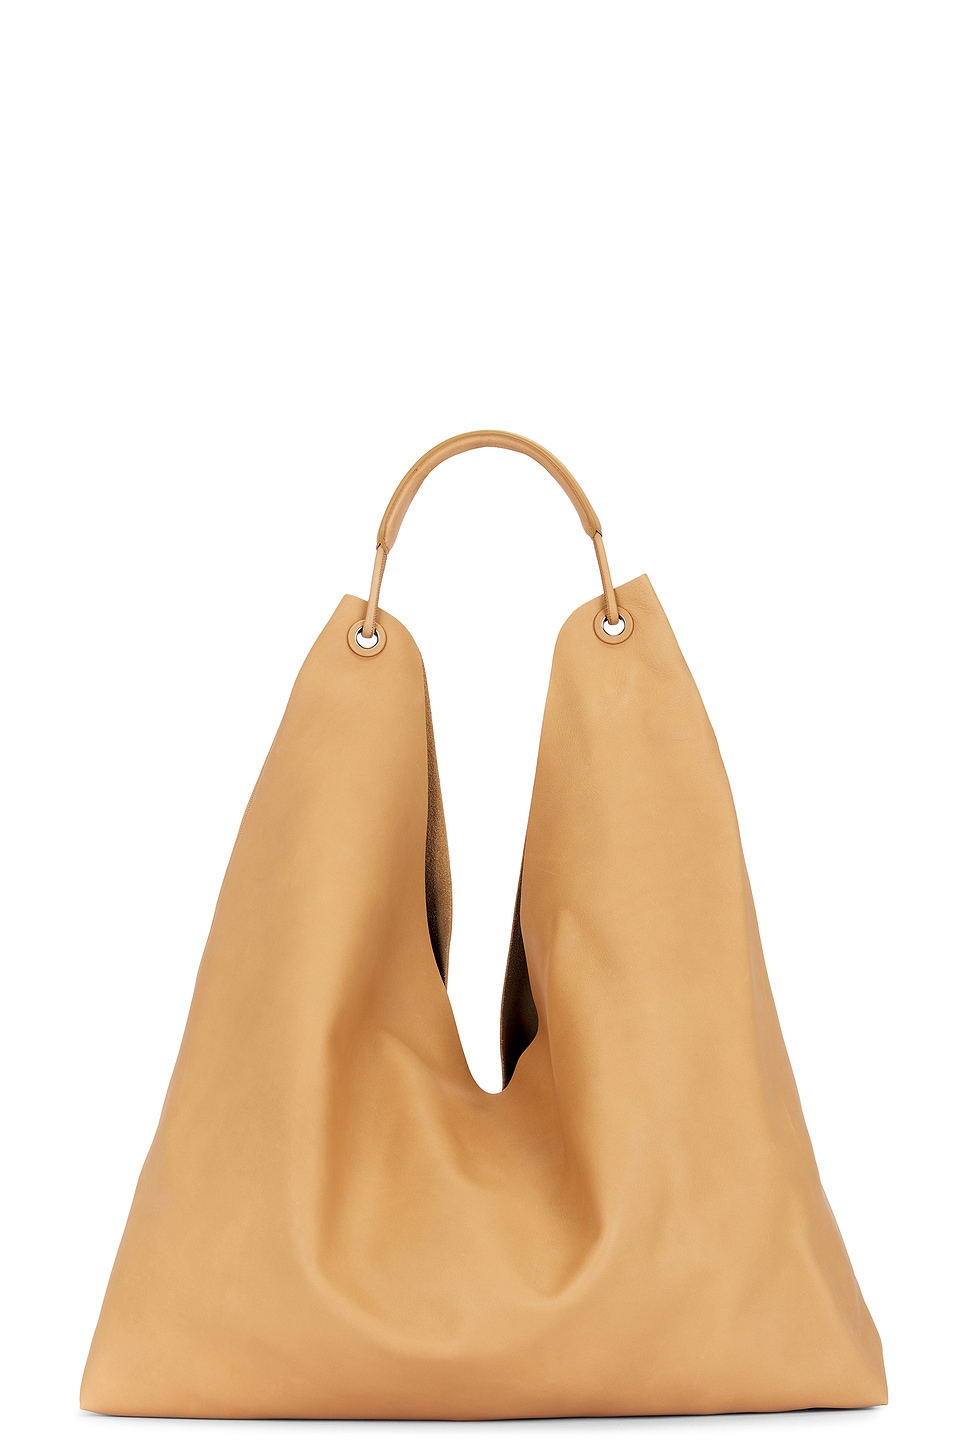 Bindle 3 Bag in Tan